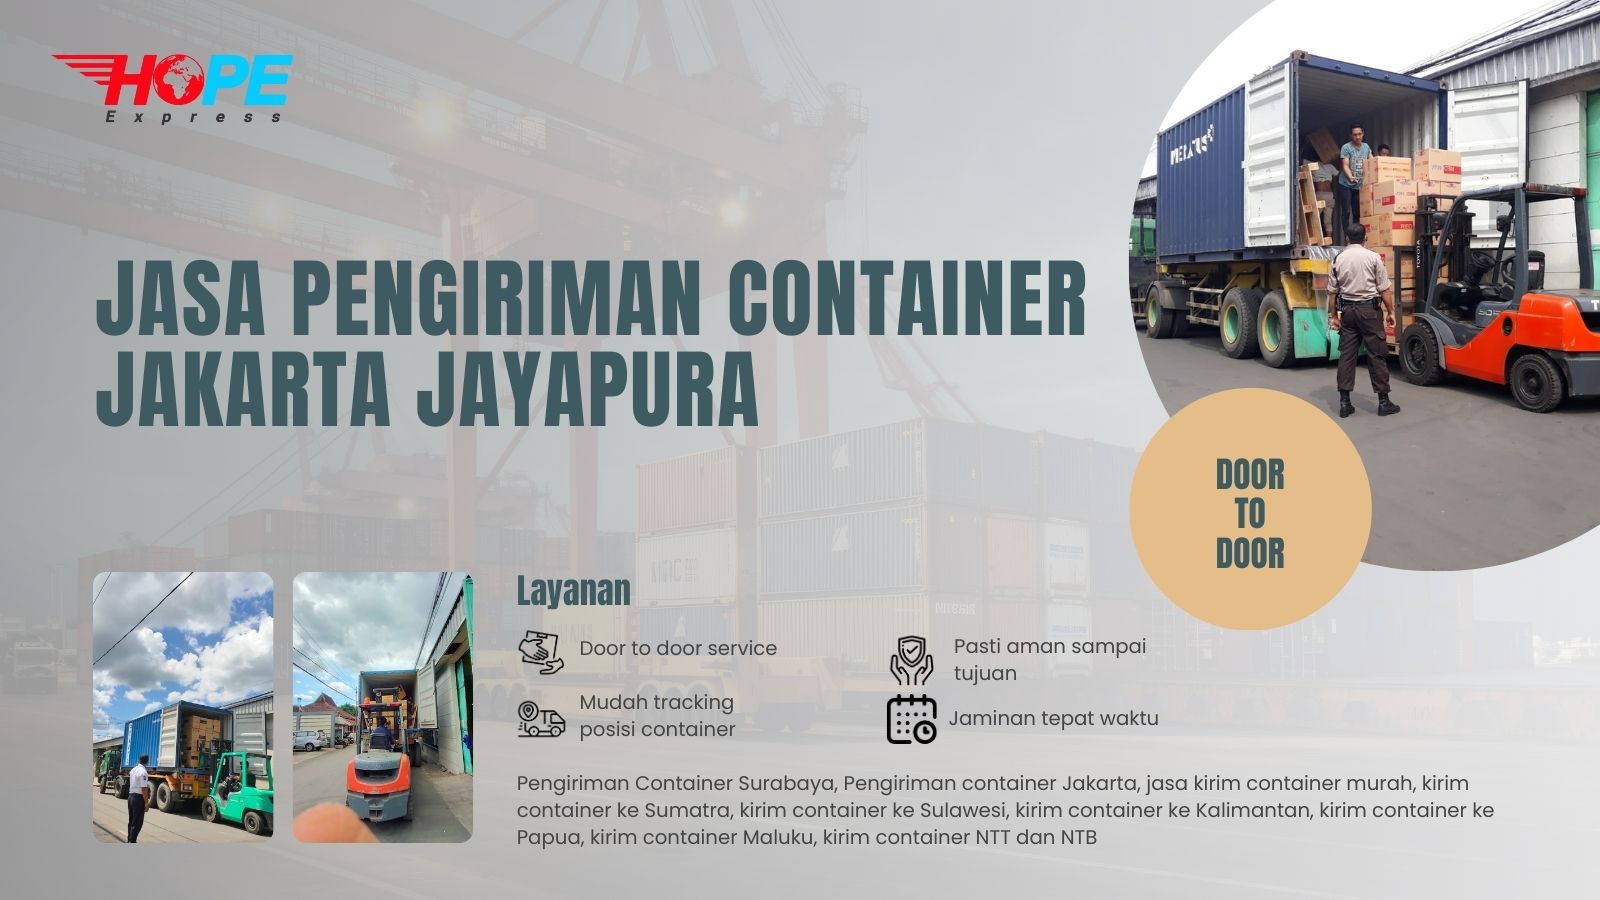 Jasa Pengiriman Container Jakarta Jayapura